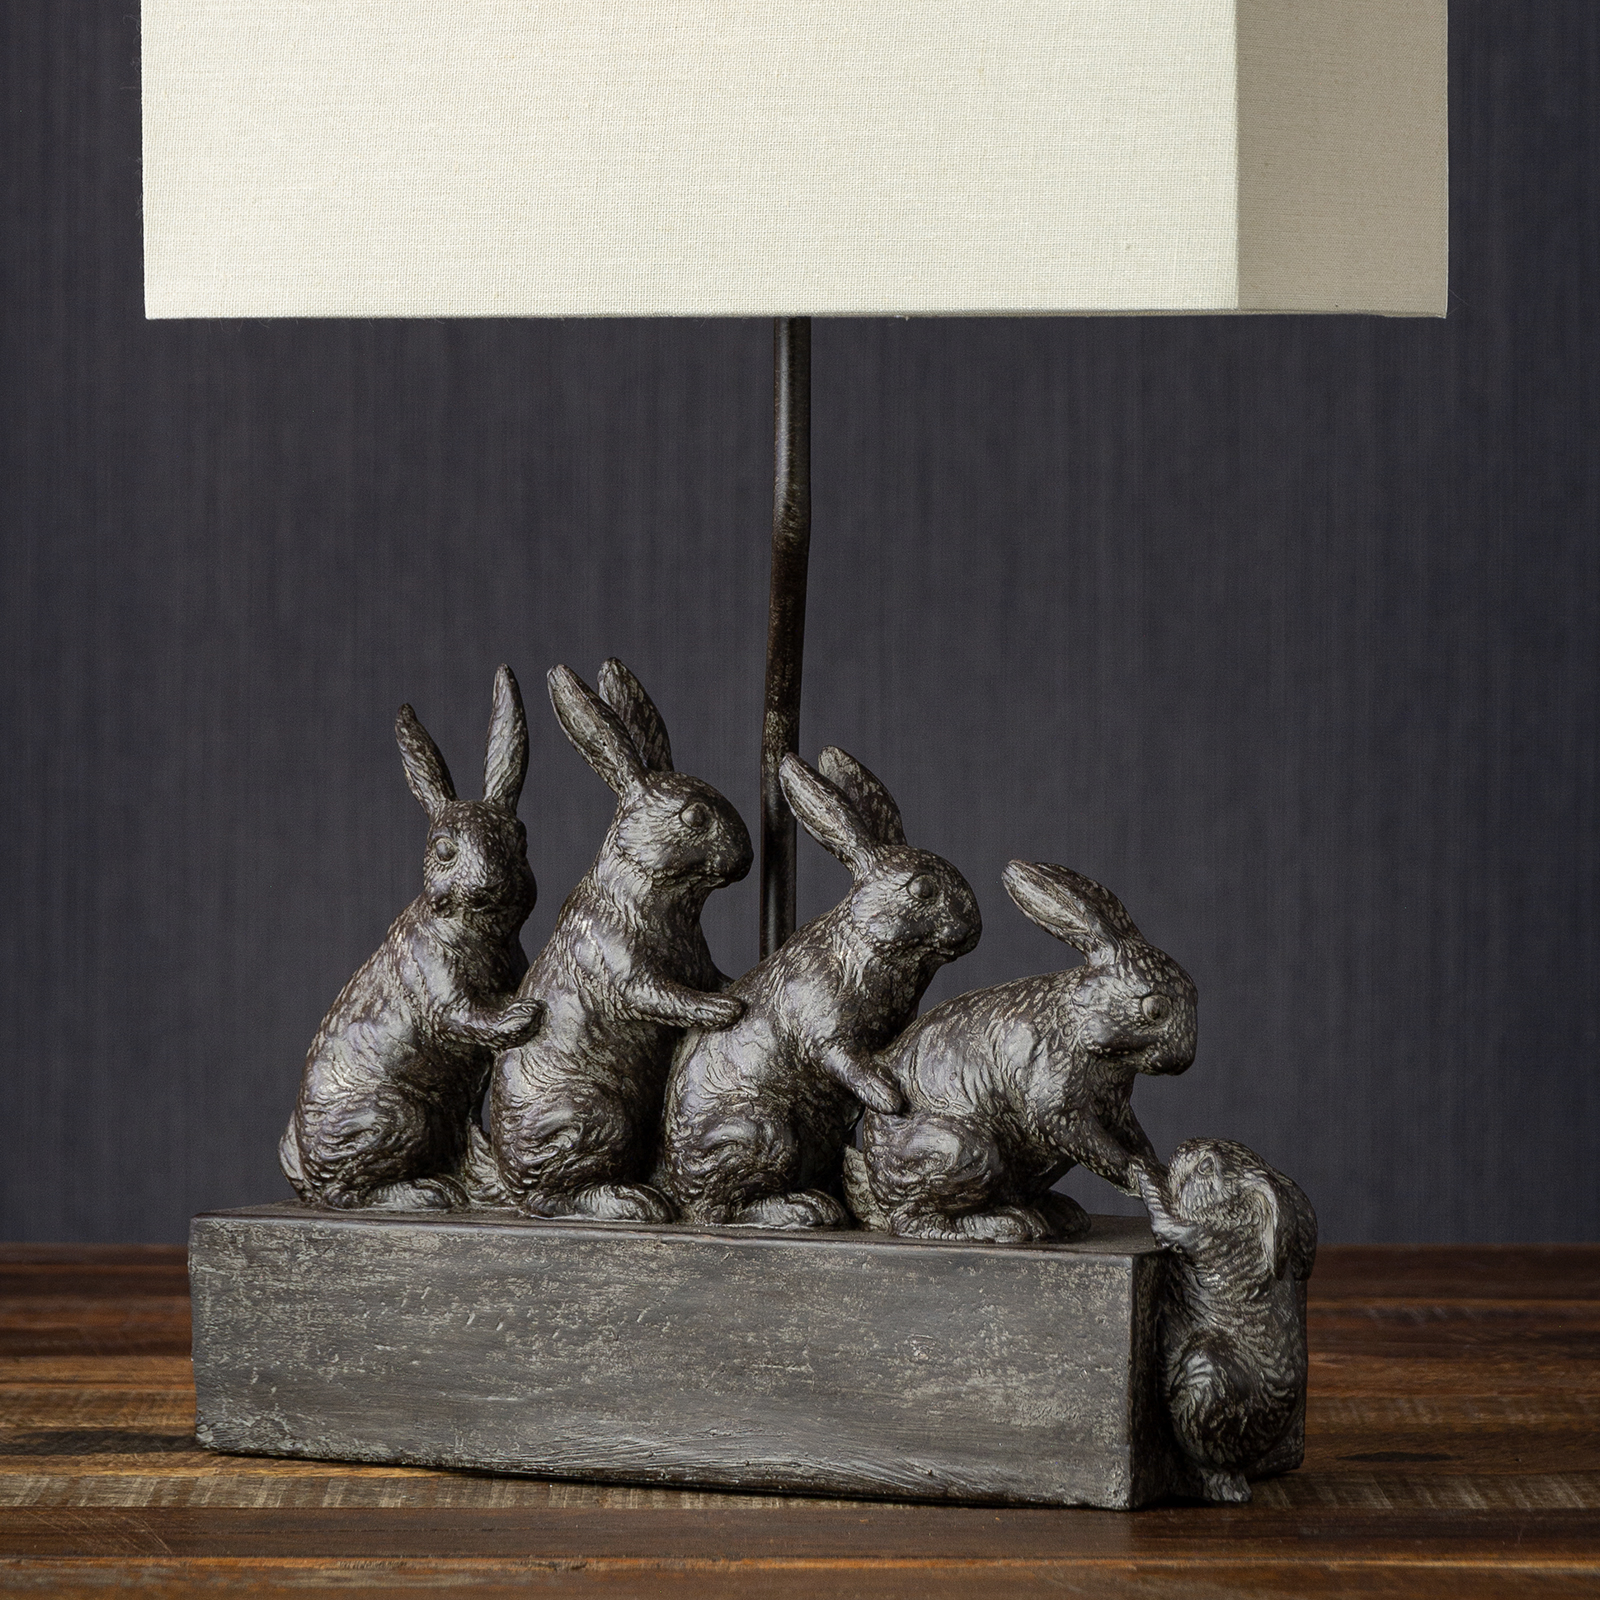 Bordslampa Kaniner på rad inkl. skärm